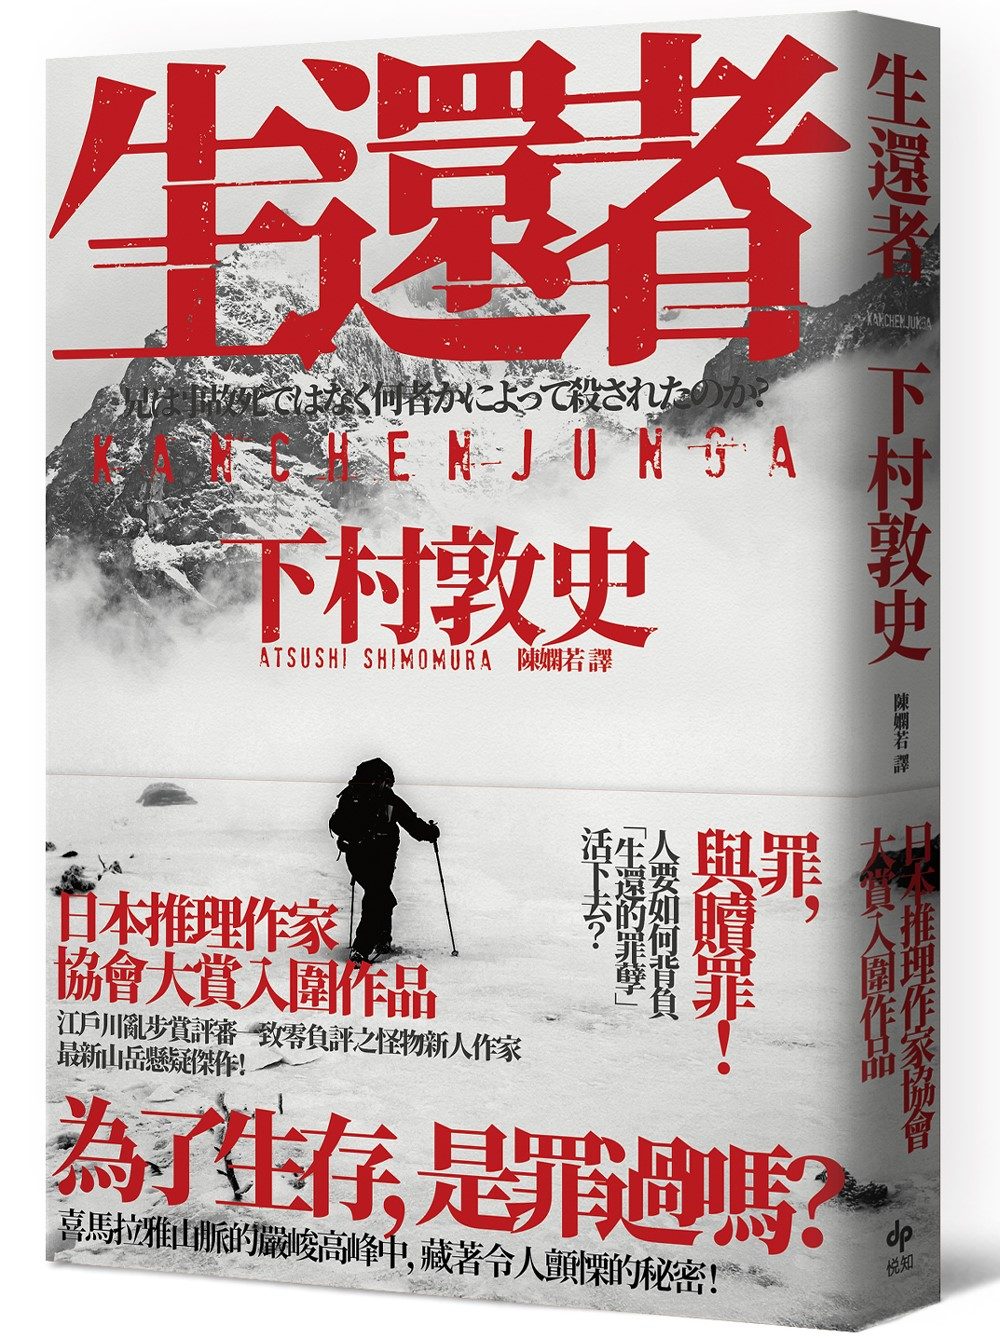 生還者：江戶川亂步賞評審一致零負評之怪物新人作家，最新山岳懸疑傑作！